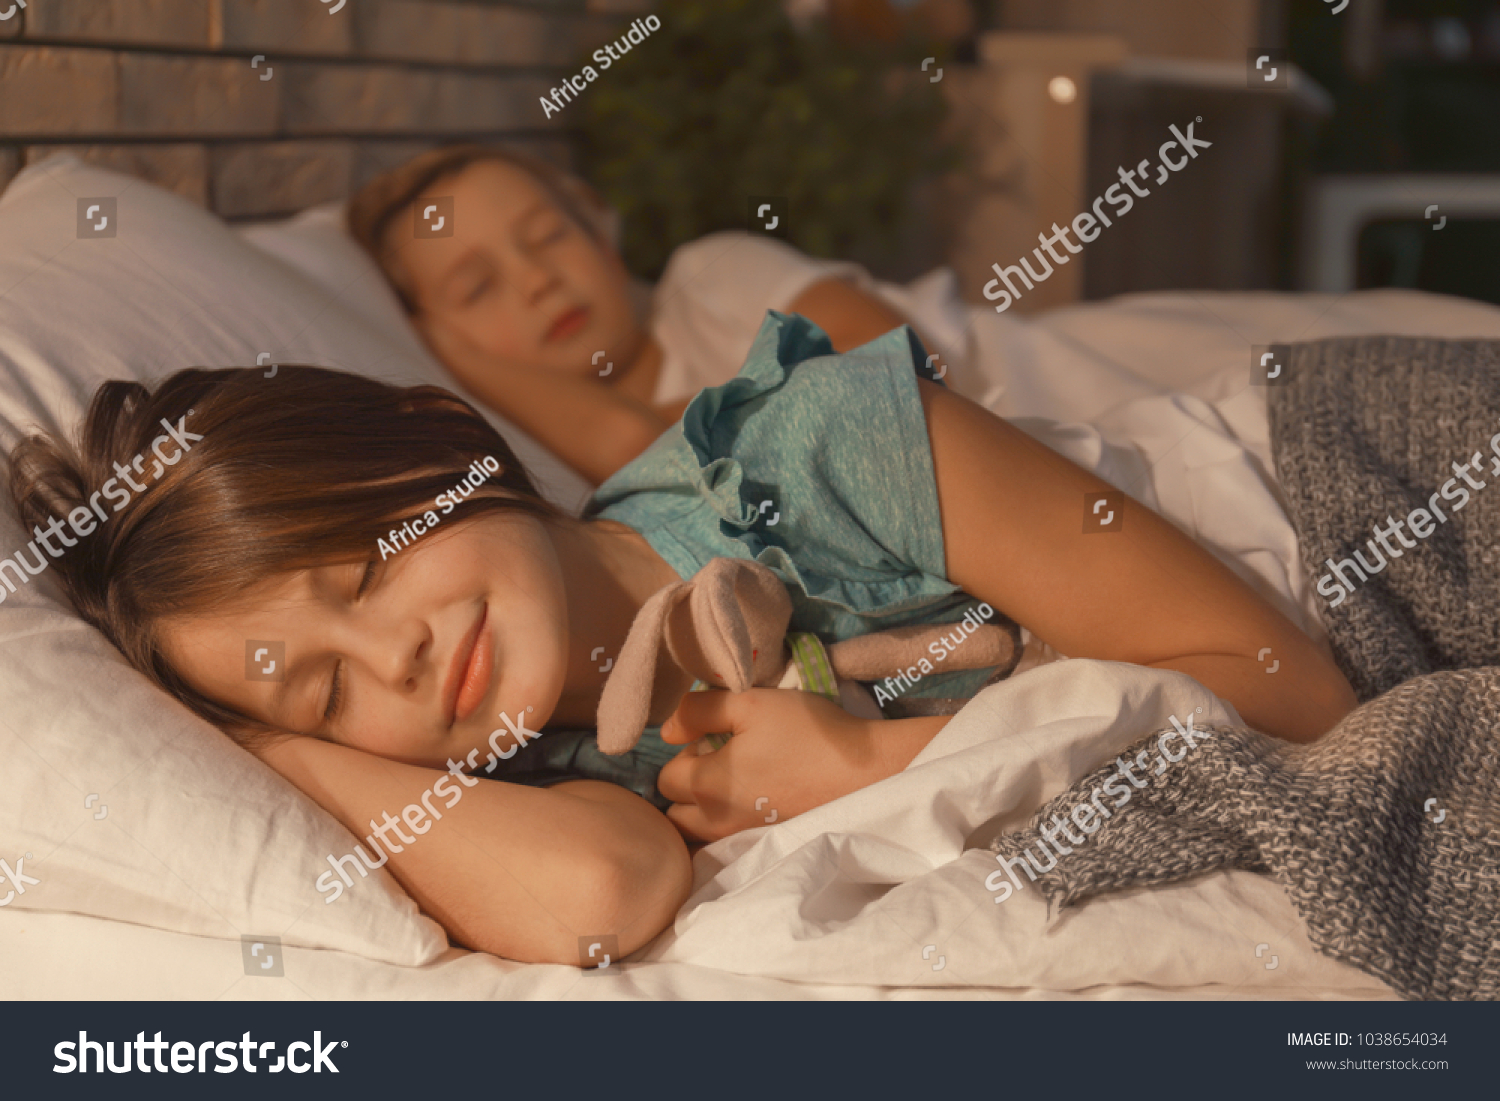 Худая девушка ебется с пьяным братом который крепко спит 